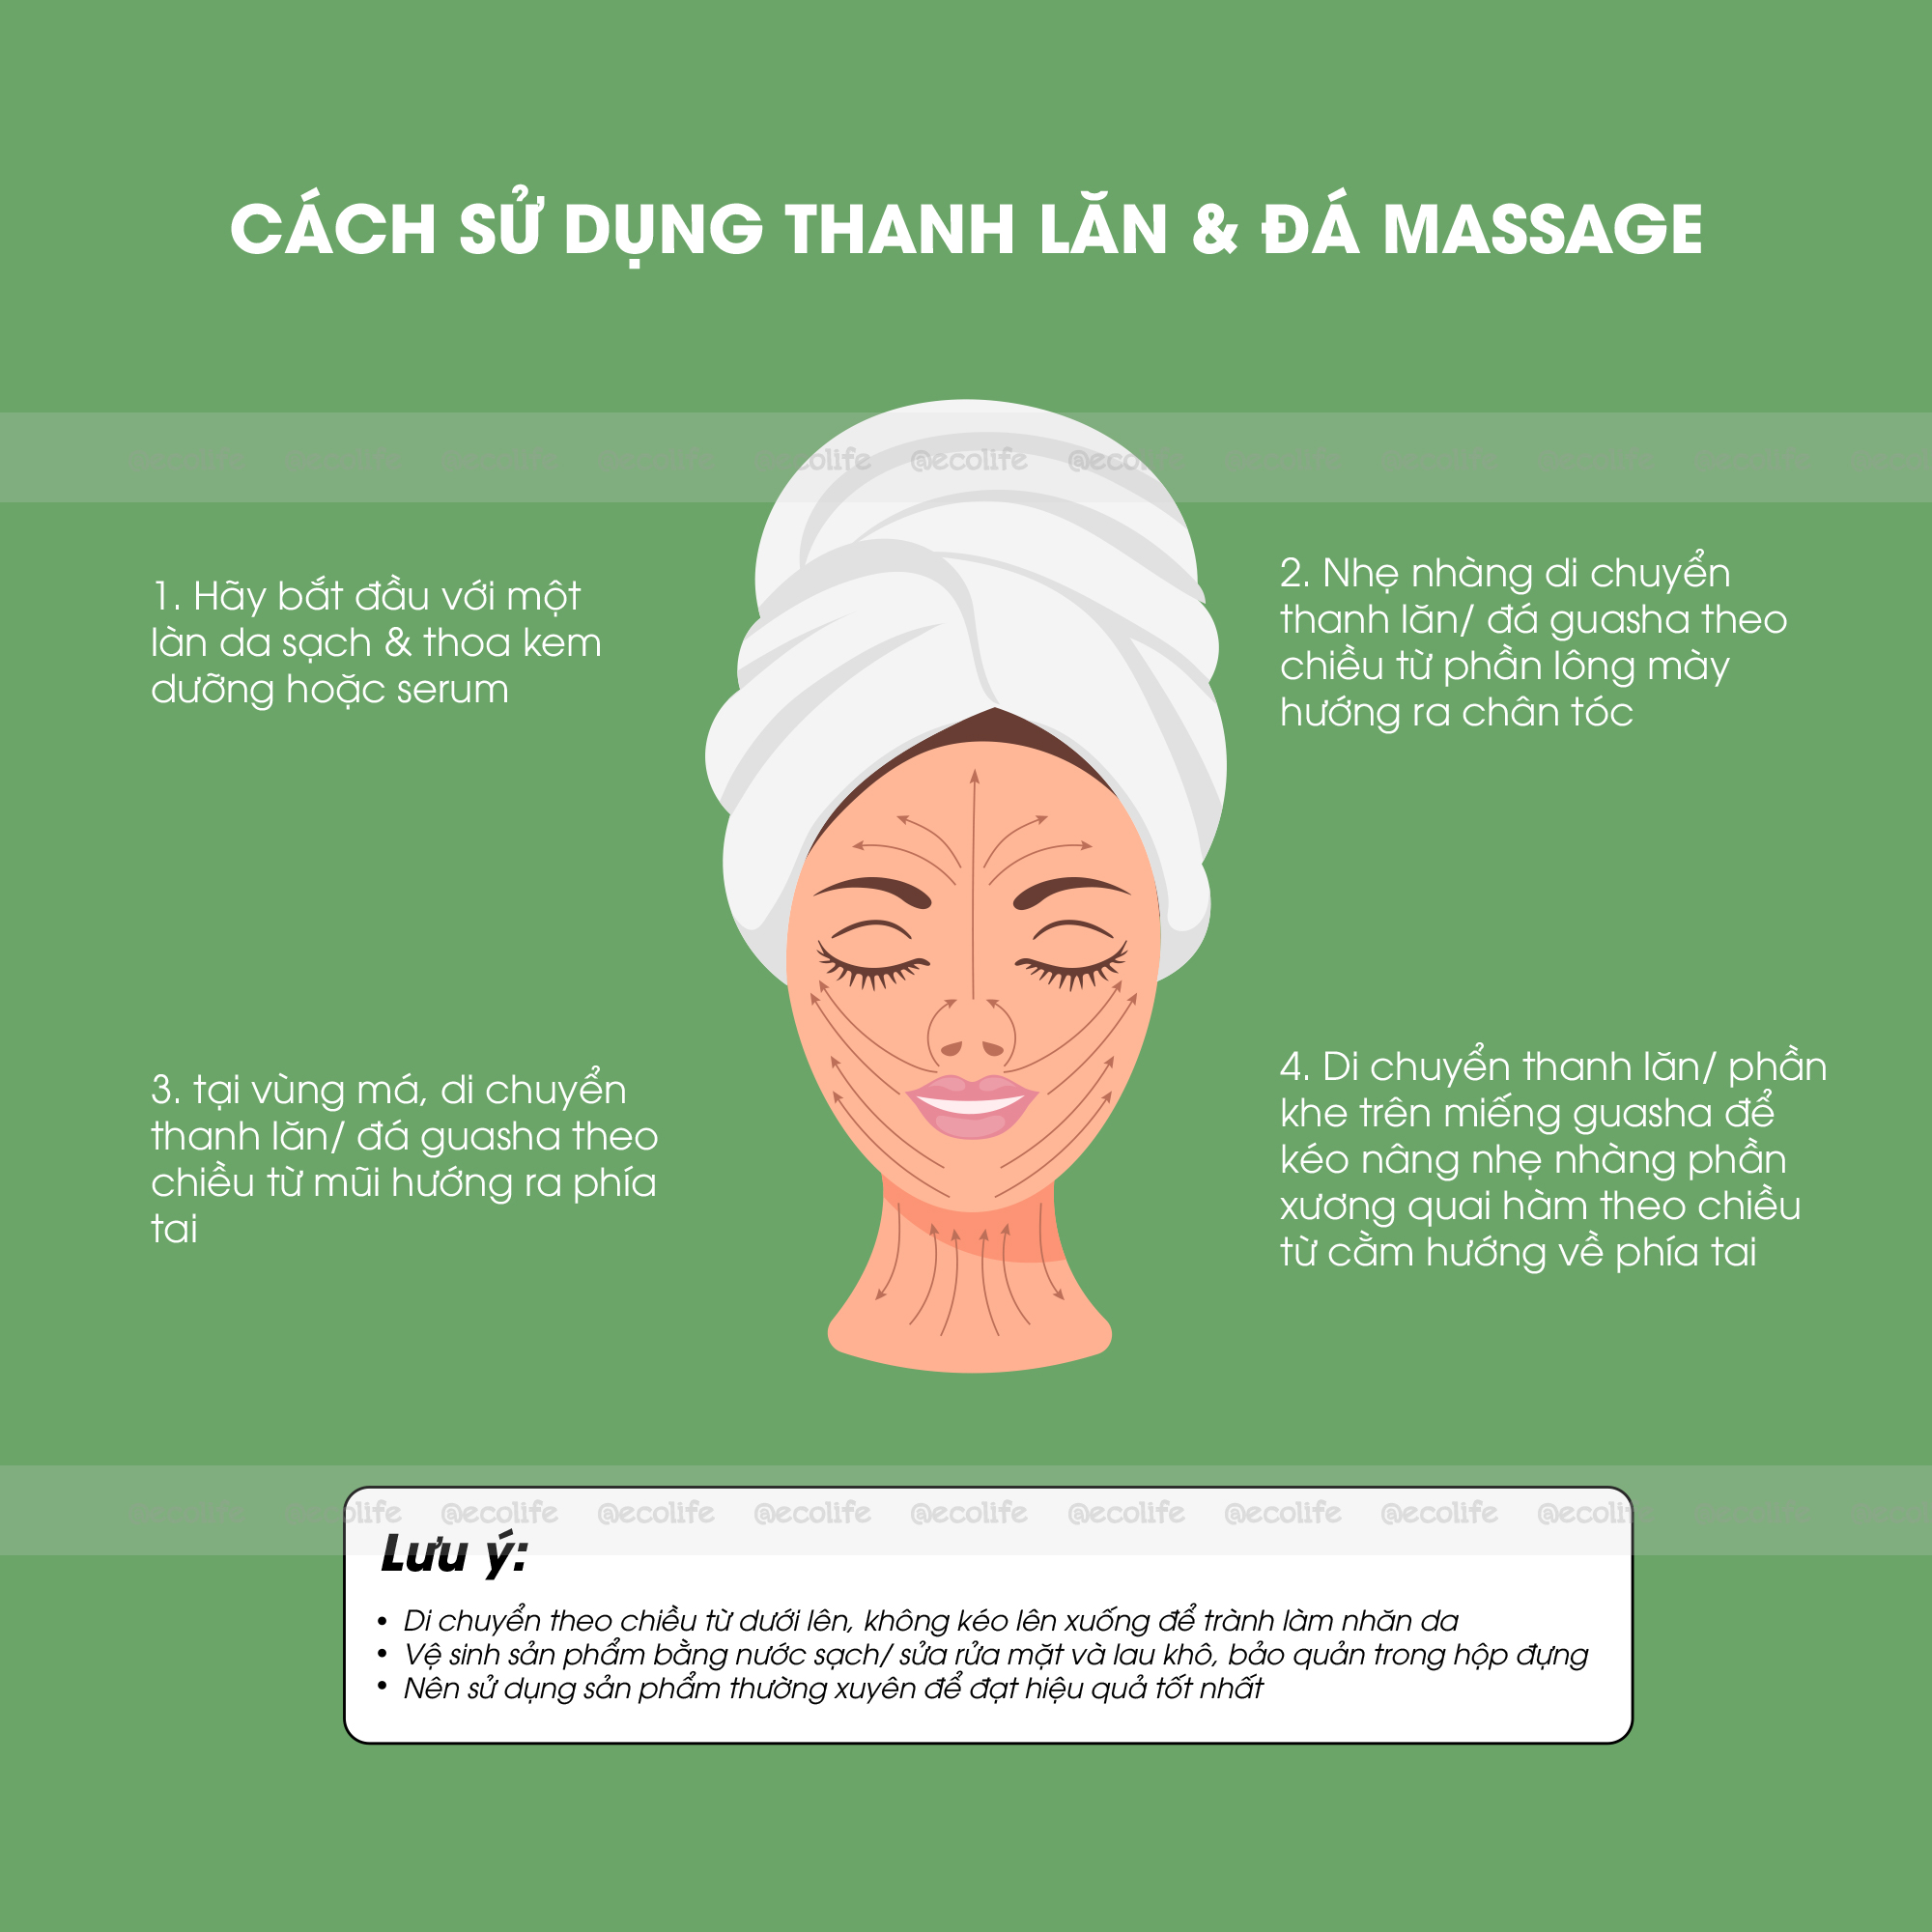 Sử dụng thanh lăn massage mặt sao cho hiệu quả